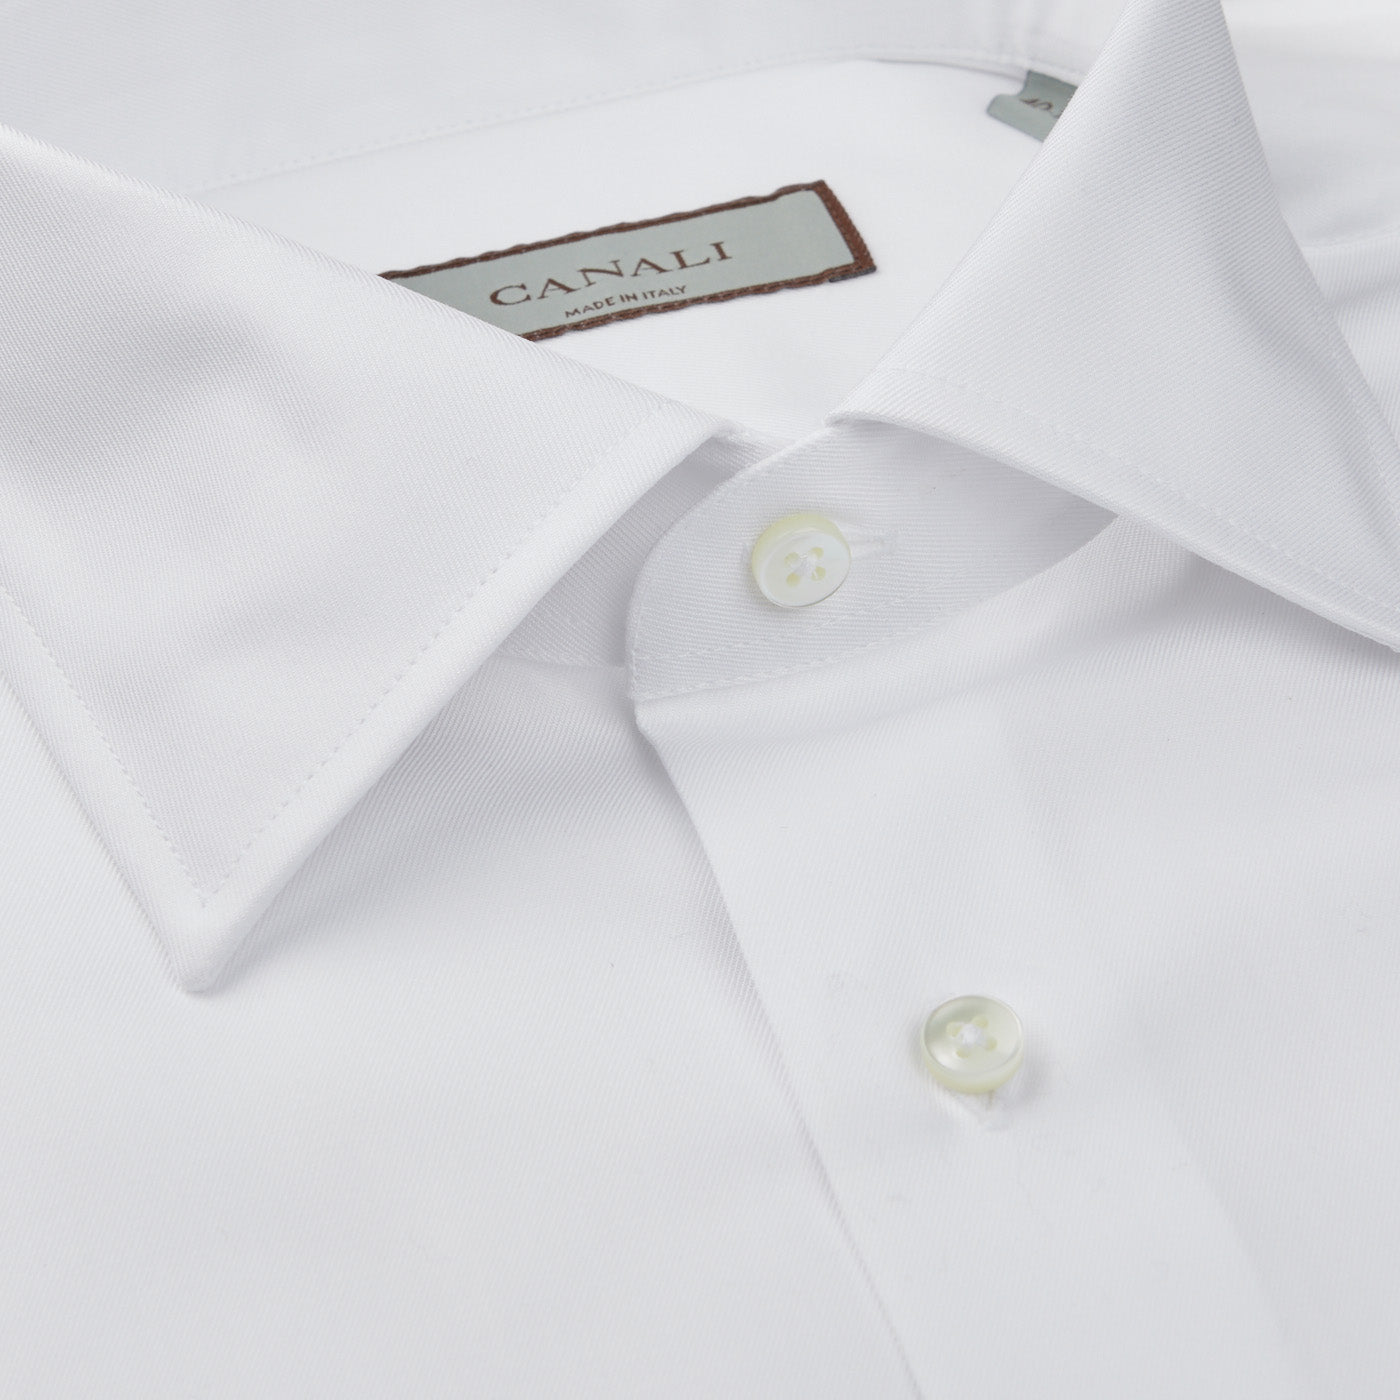 An ultra-soft white cotton single cuff shirt by Canali.